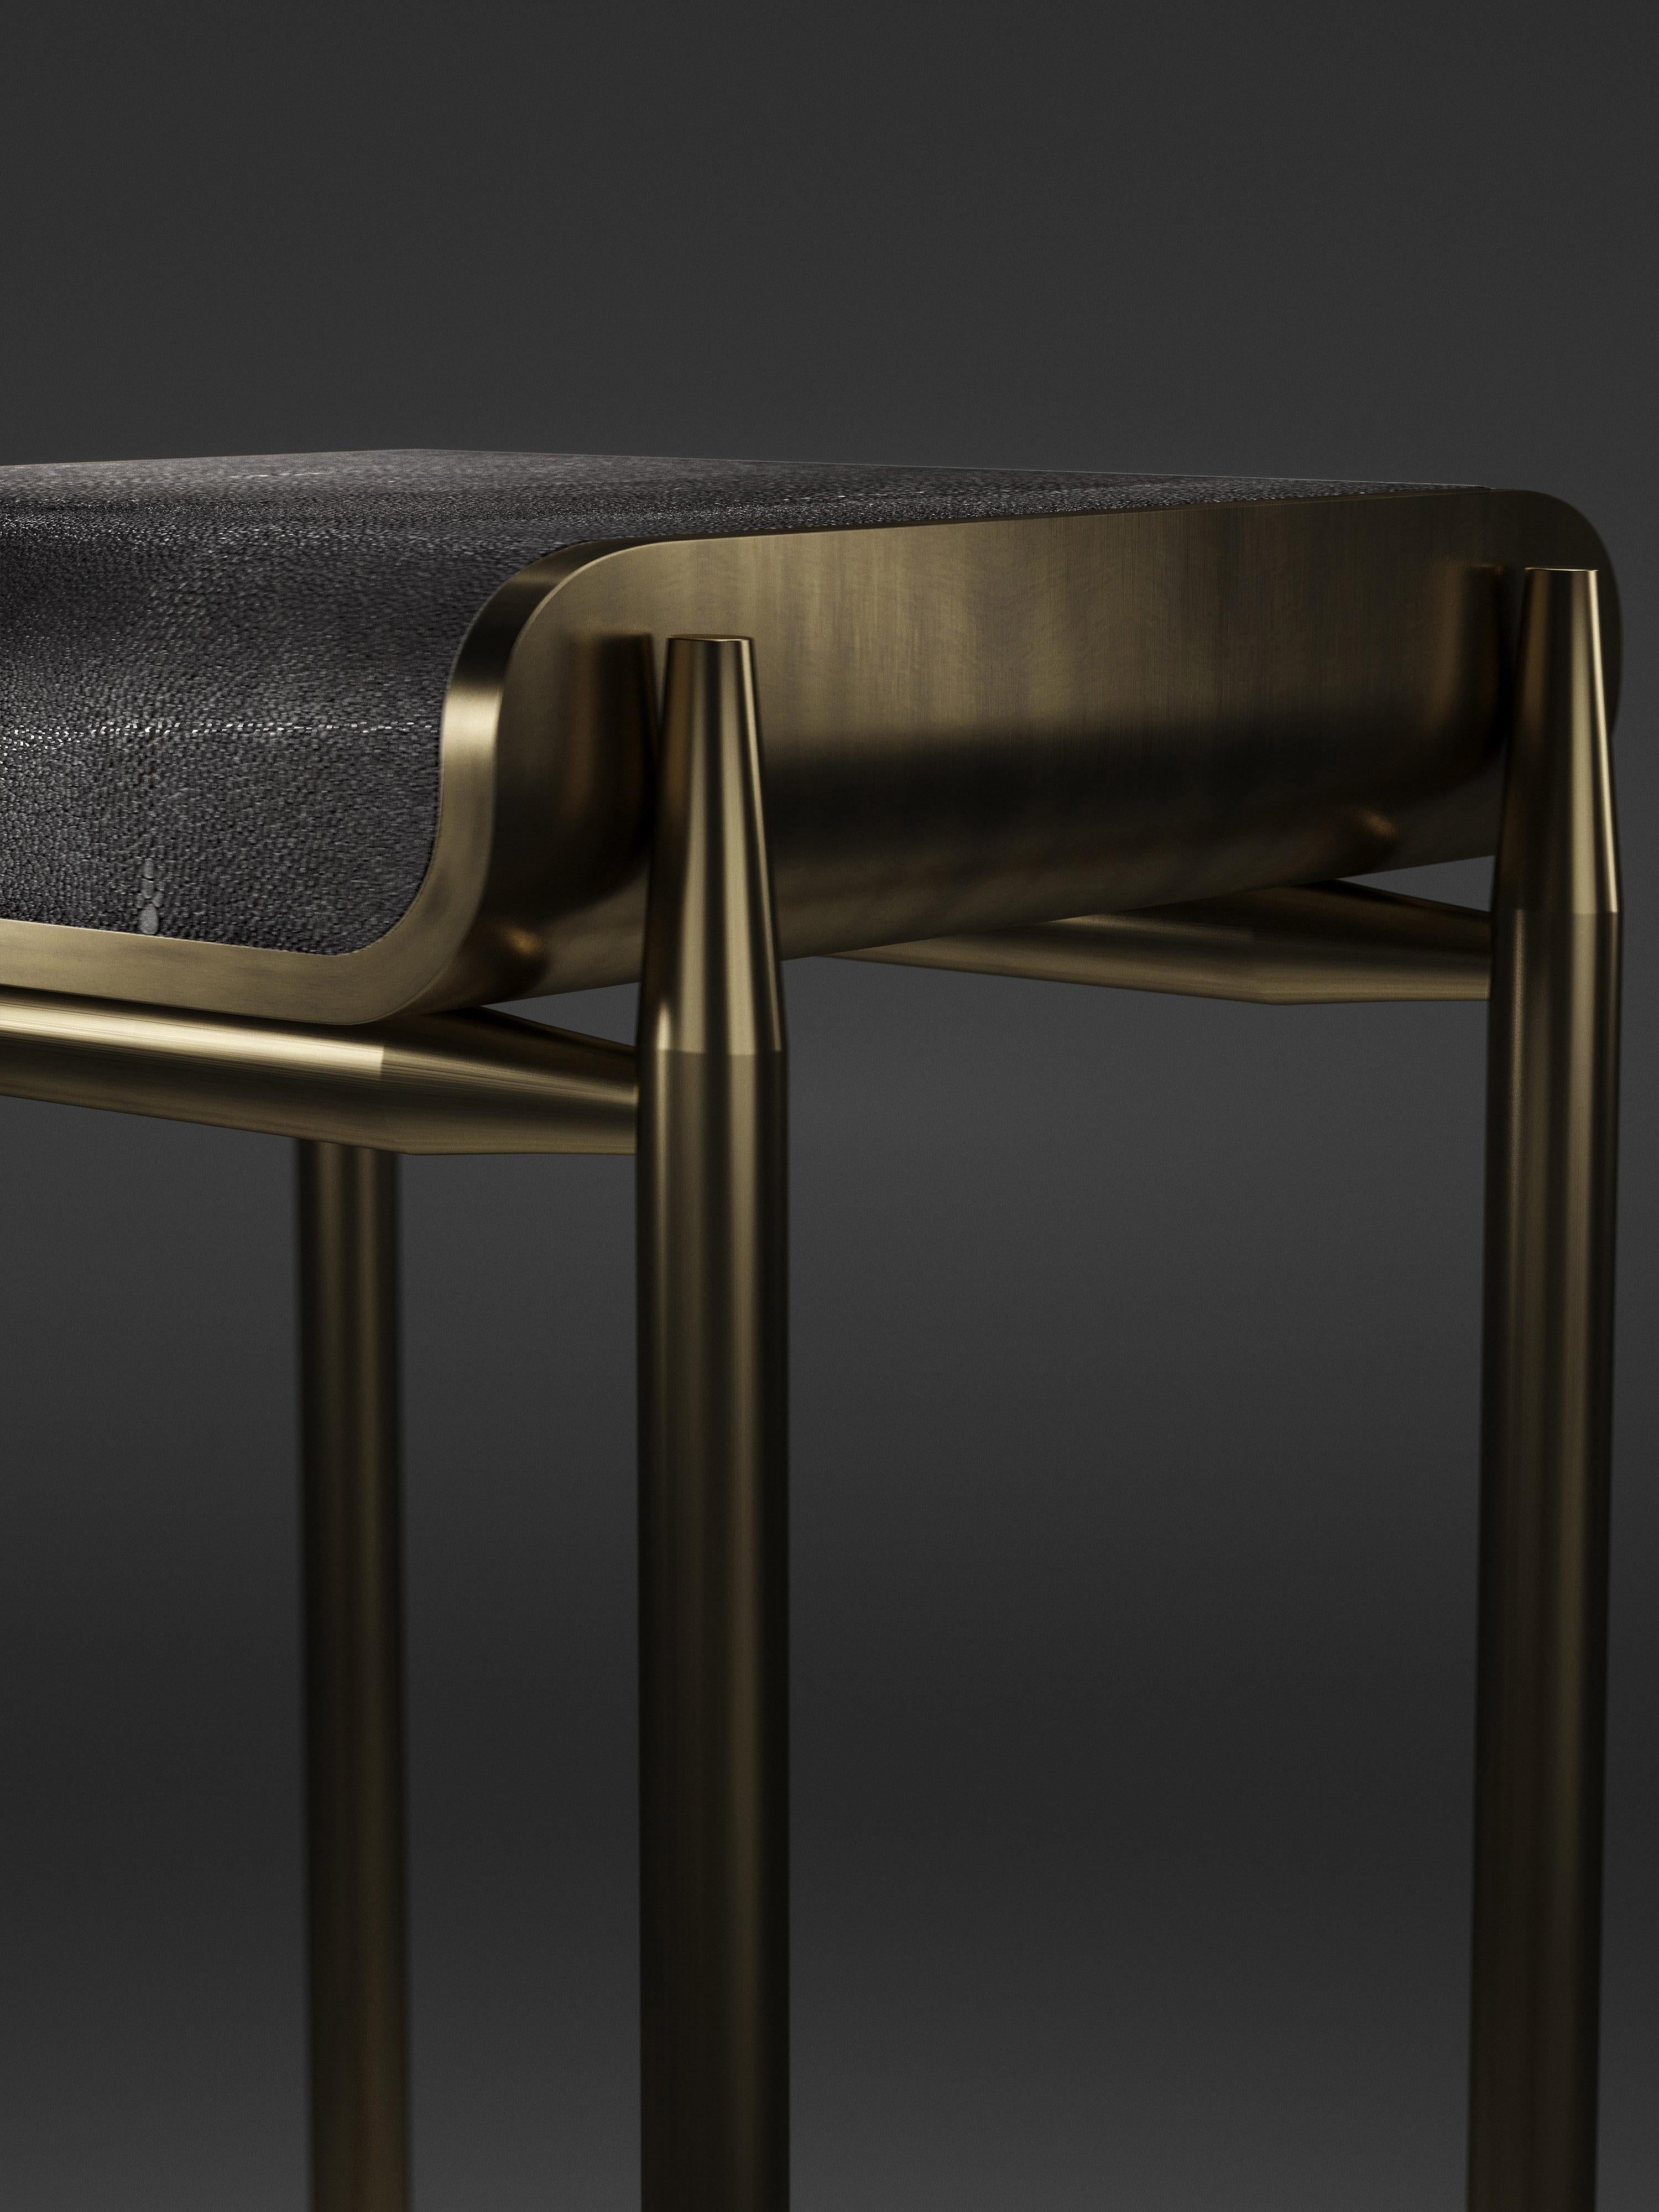 bar stools bronze